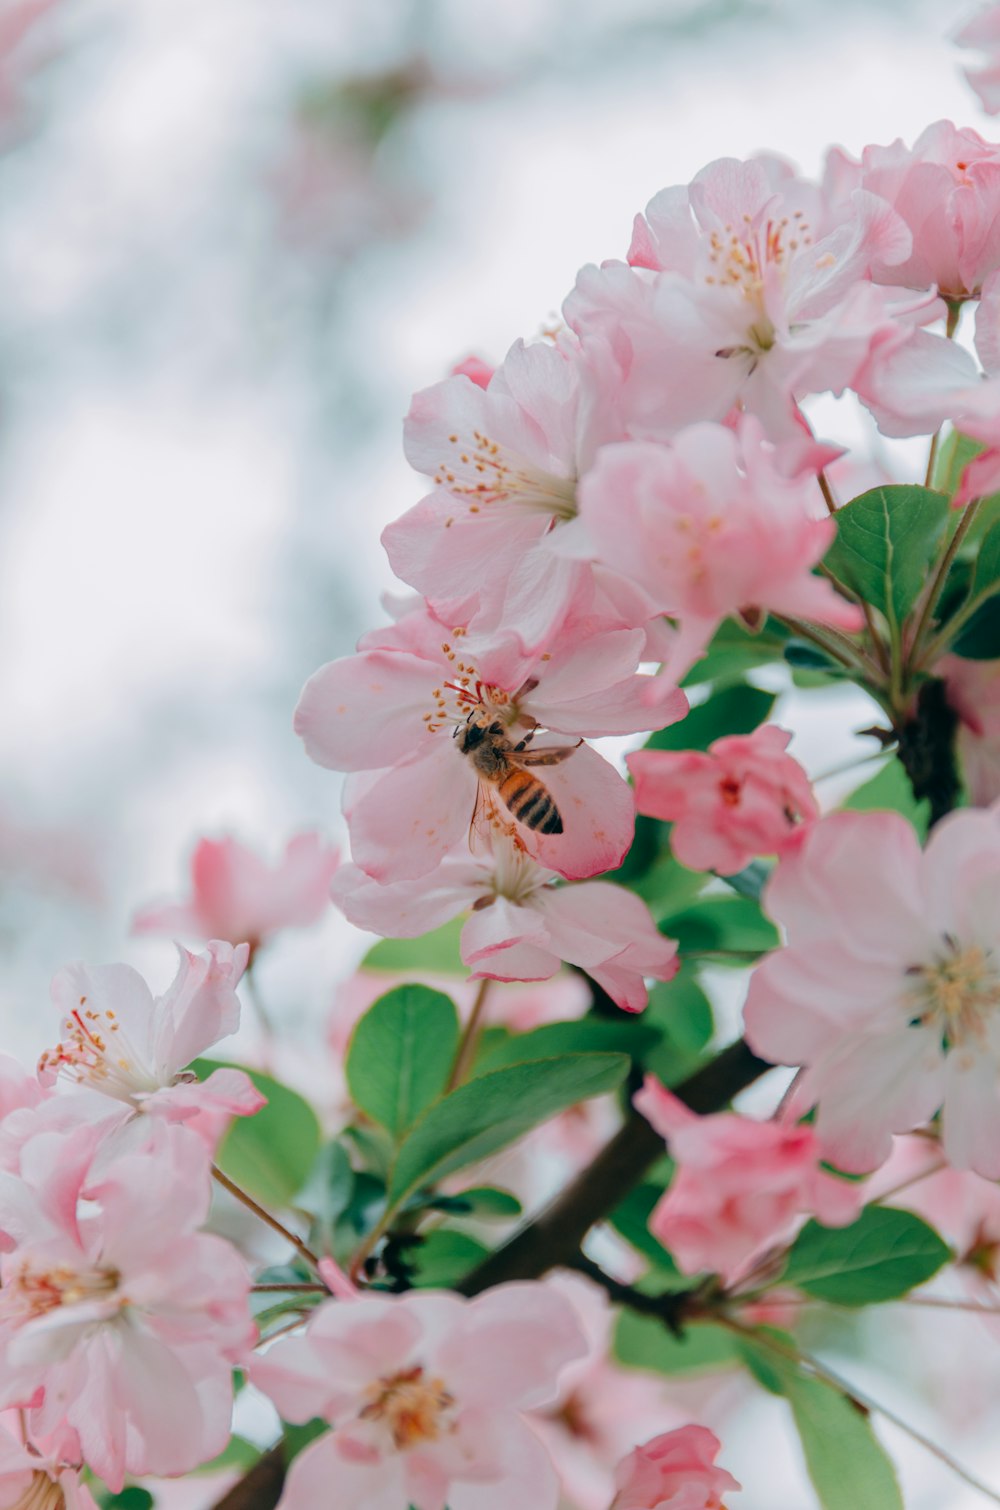 abeja en flor de pétalos rosados